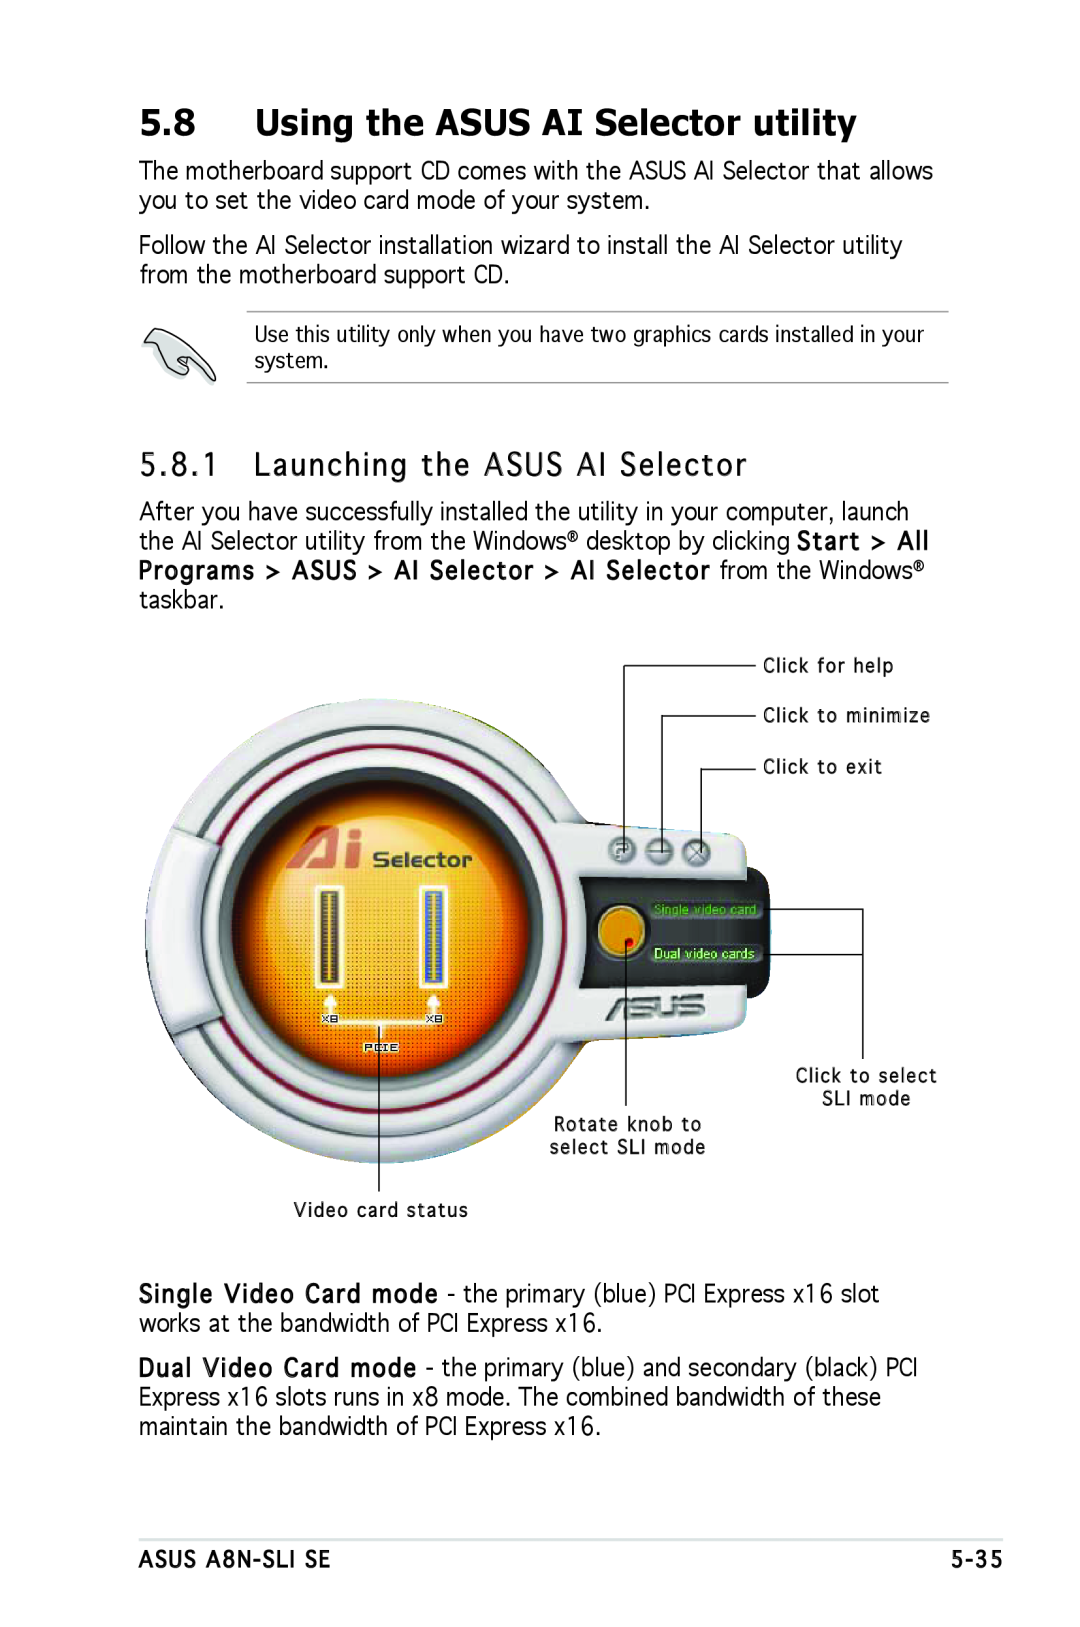 Asus A8N-SLI SE manual Using the ASUS AI Selector utility, Launching the ASUS AI Selector 